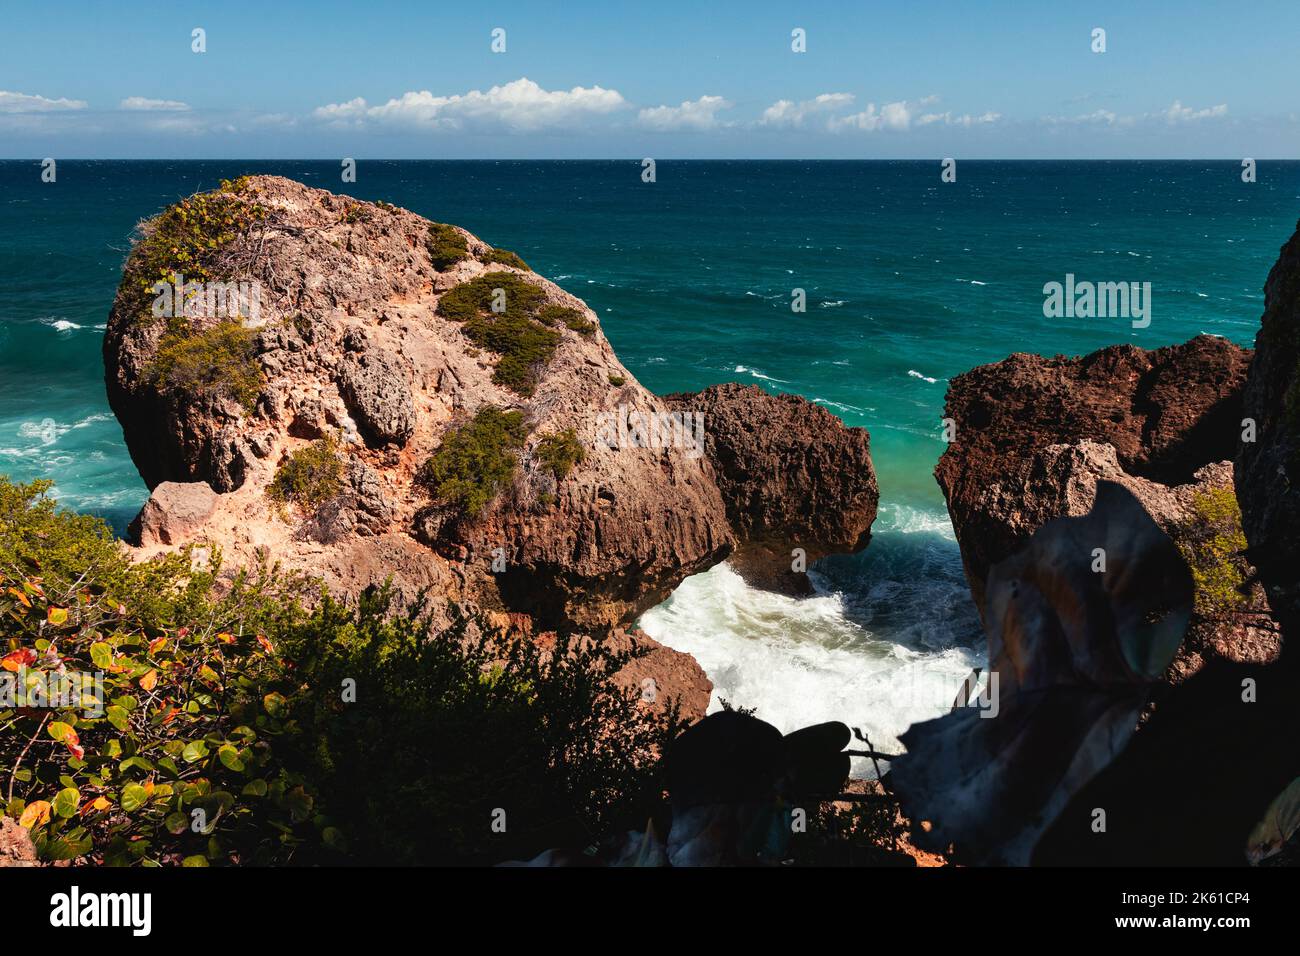 Costa di sopravvivenza di Puerto rico Aguadilla con la formazione di rocce enormi stupefacente Foto Stock